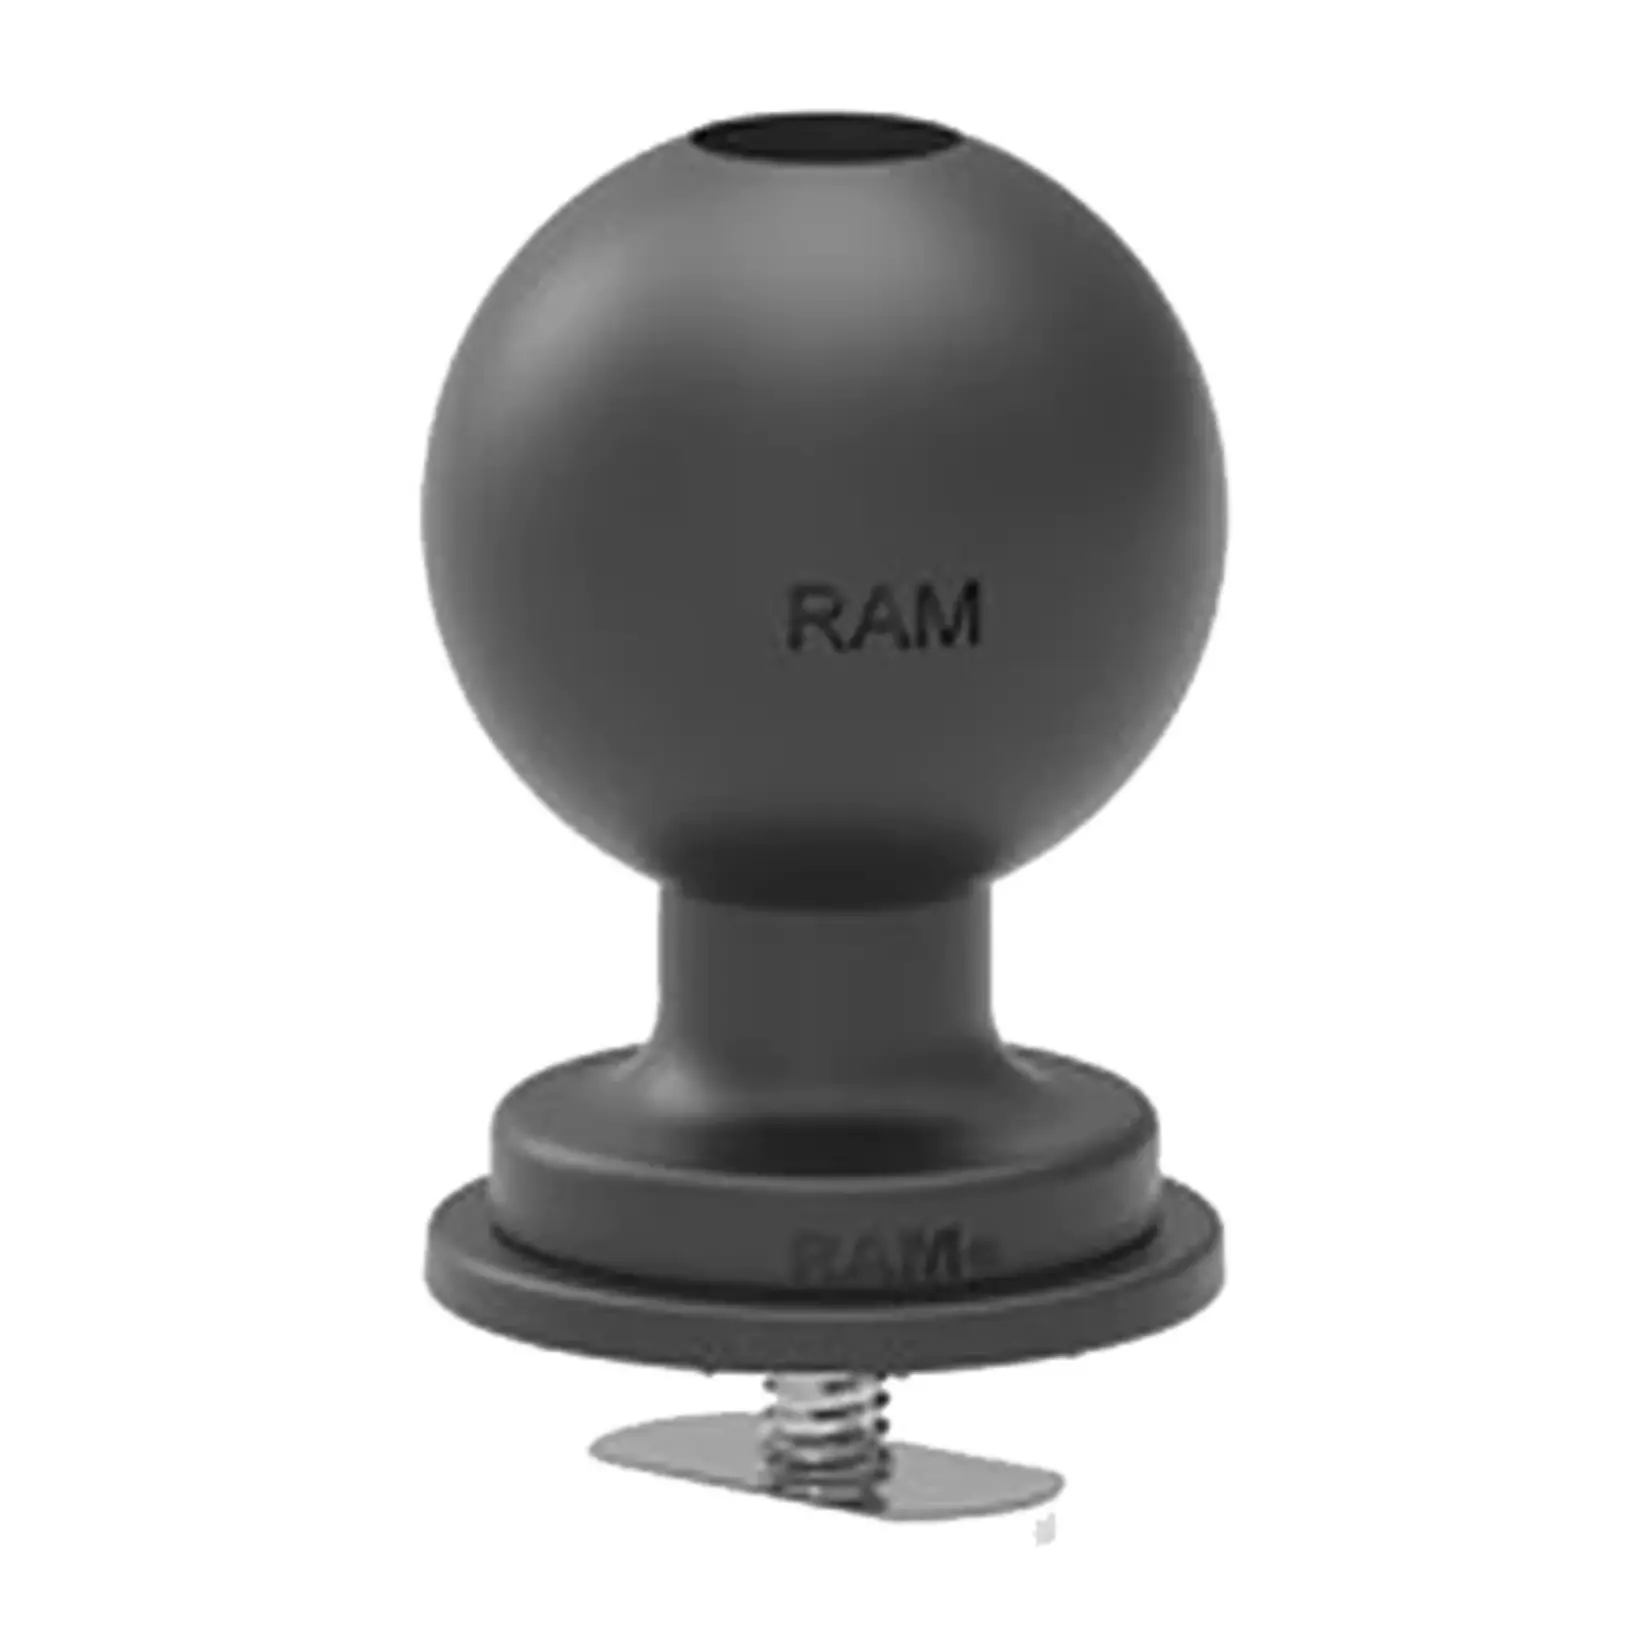 Hobie Ram 1.5" Track Ball